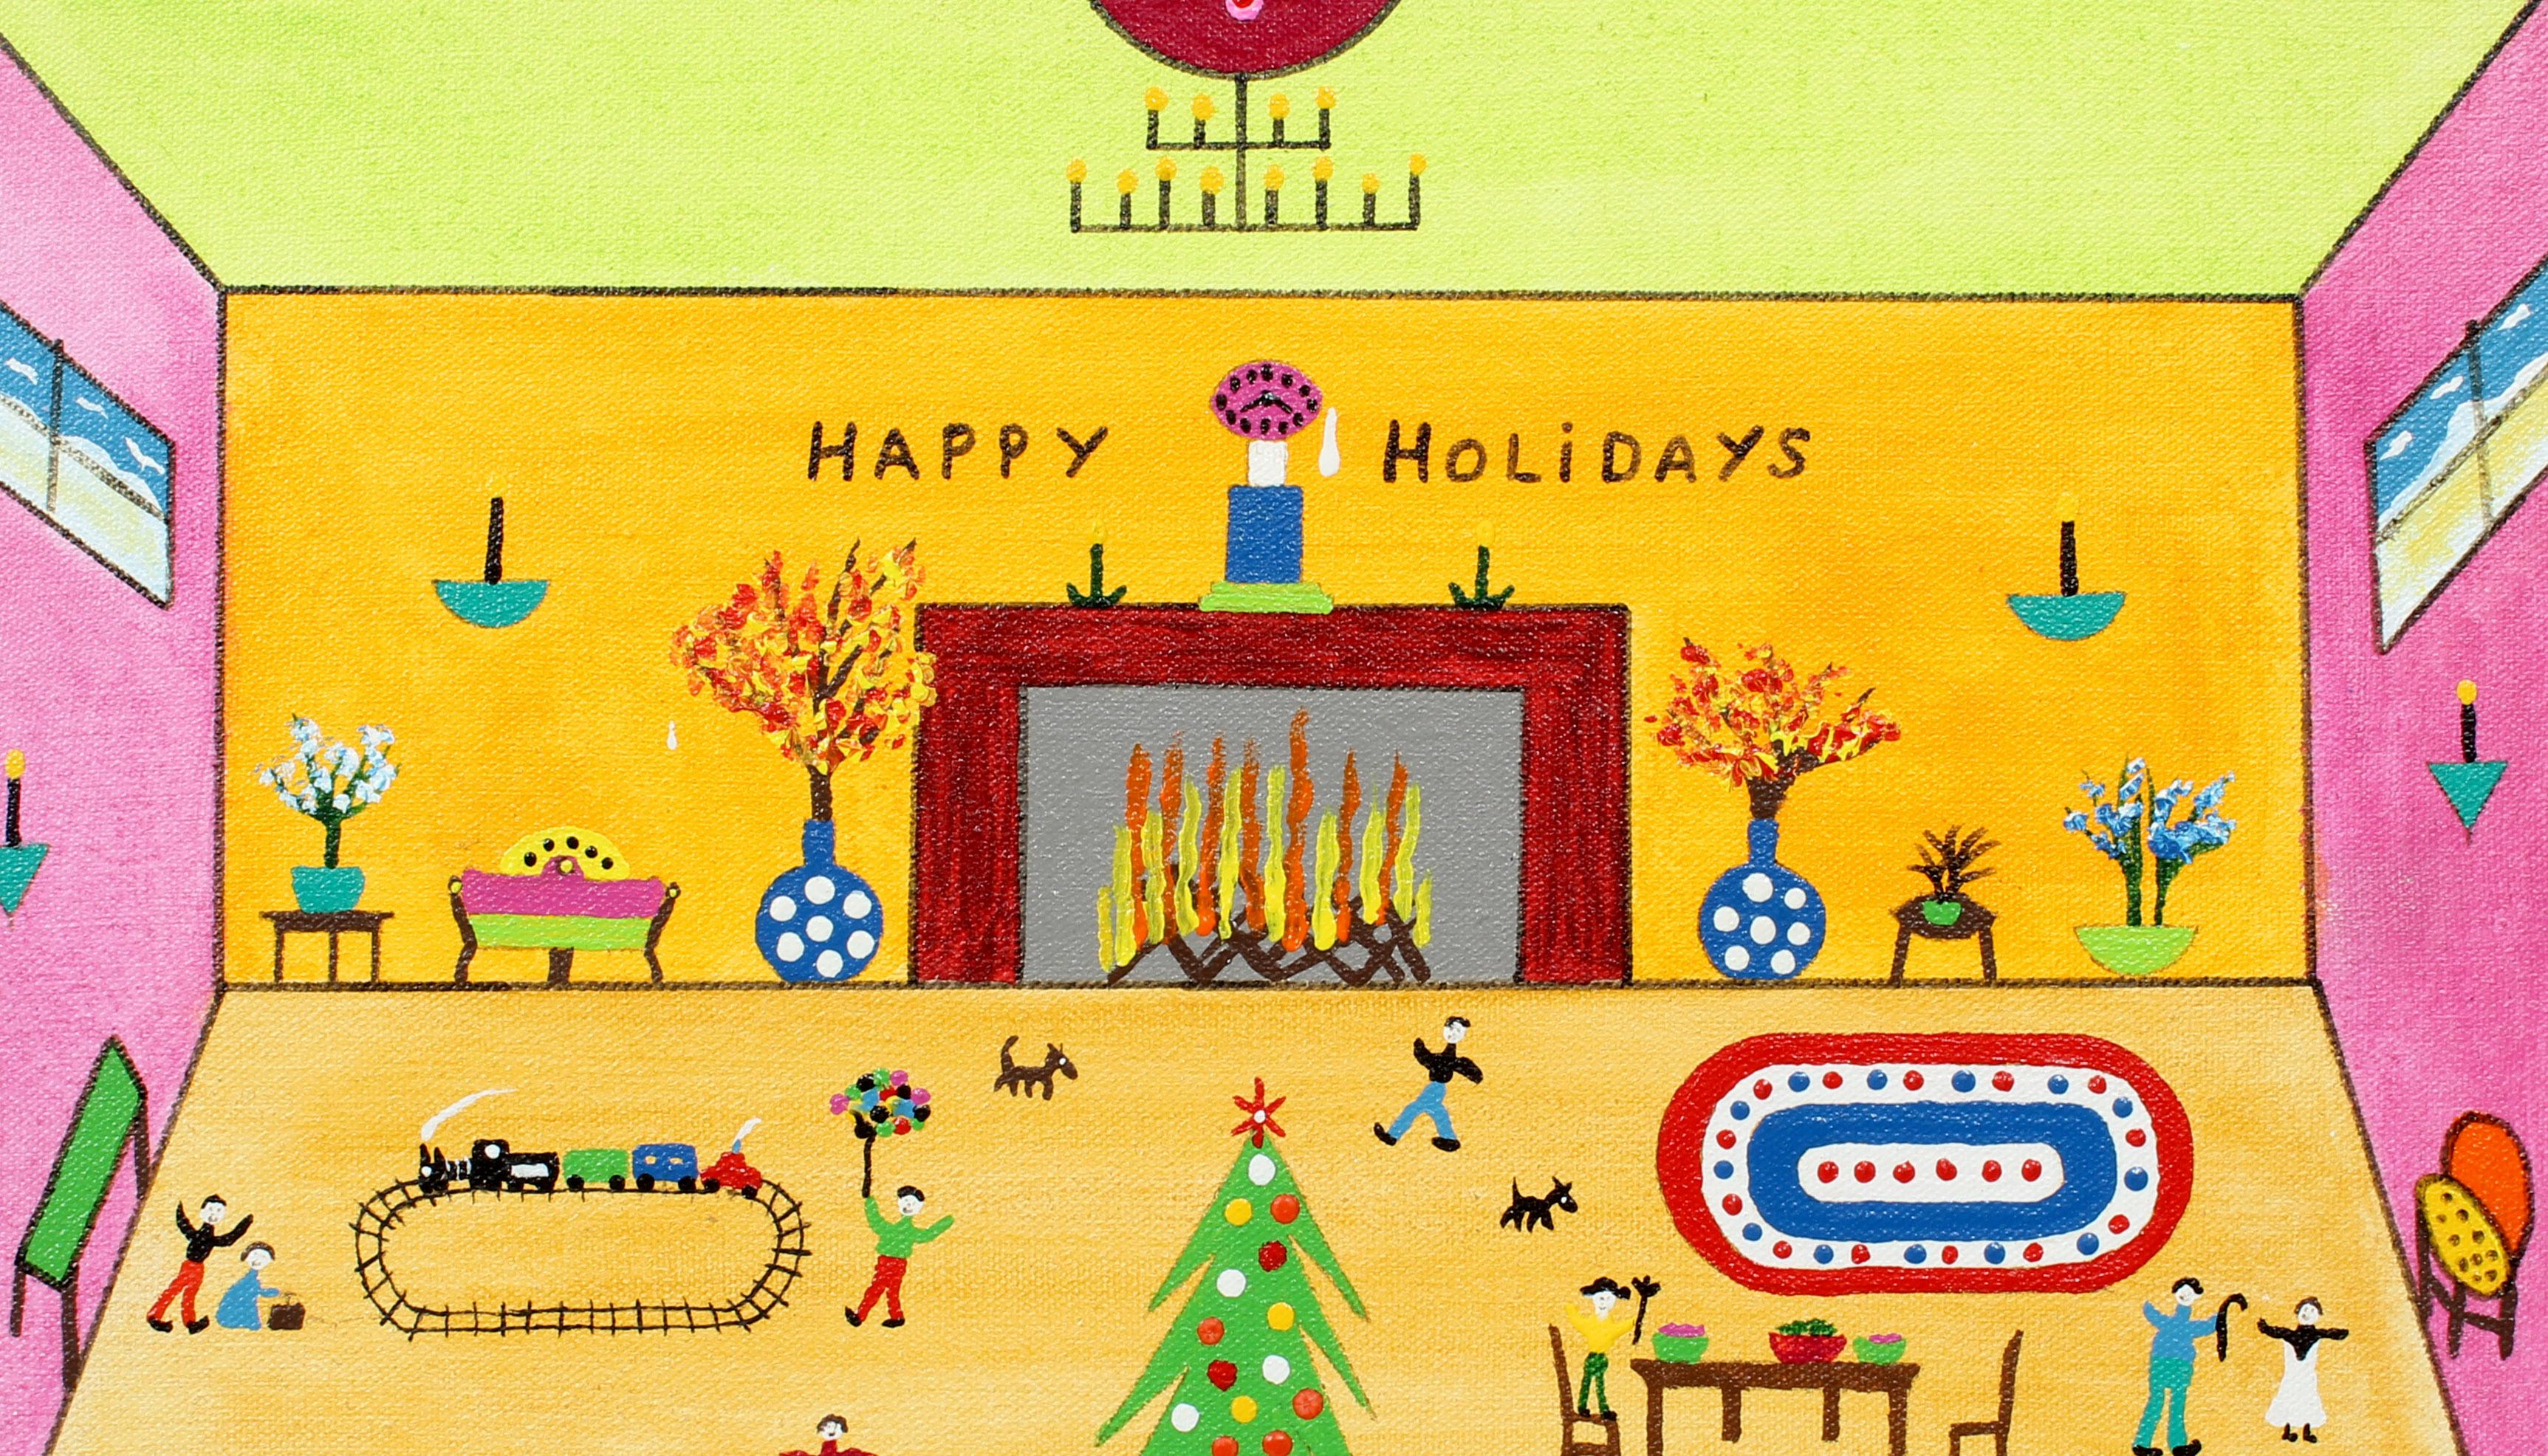 Eine durch und durch charmante  originalgemälde in Acryl auf Leinwand des amerikanischen Volkskünstlers James C. Litz.  Dieses wichtige Werk eignet sich hervorragend als Weihnachtsgeschenk oder als wunderbare Dekoration für das eigene Heim und